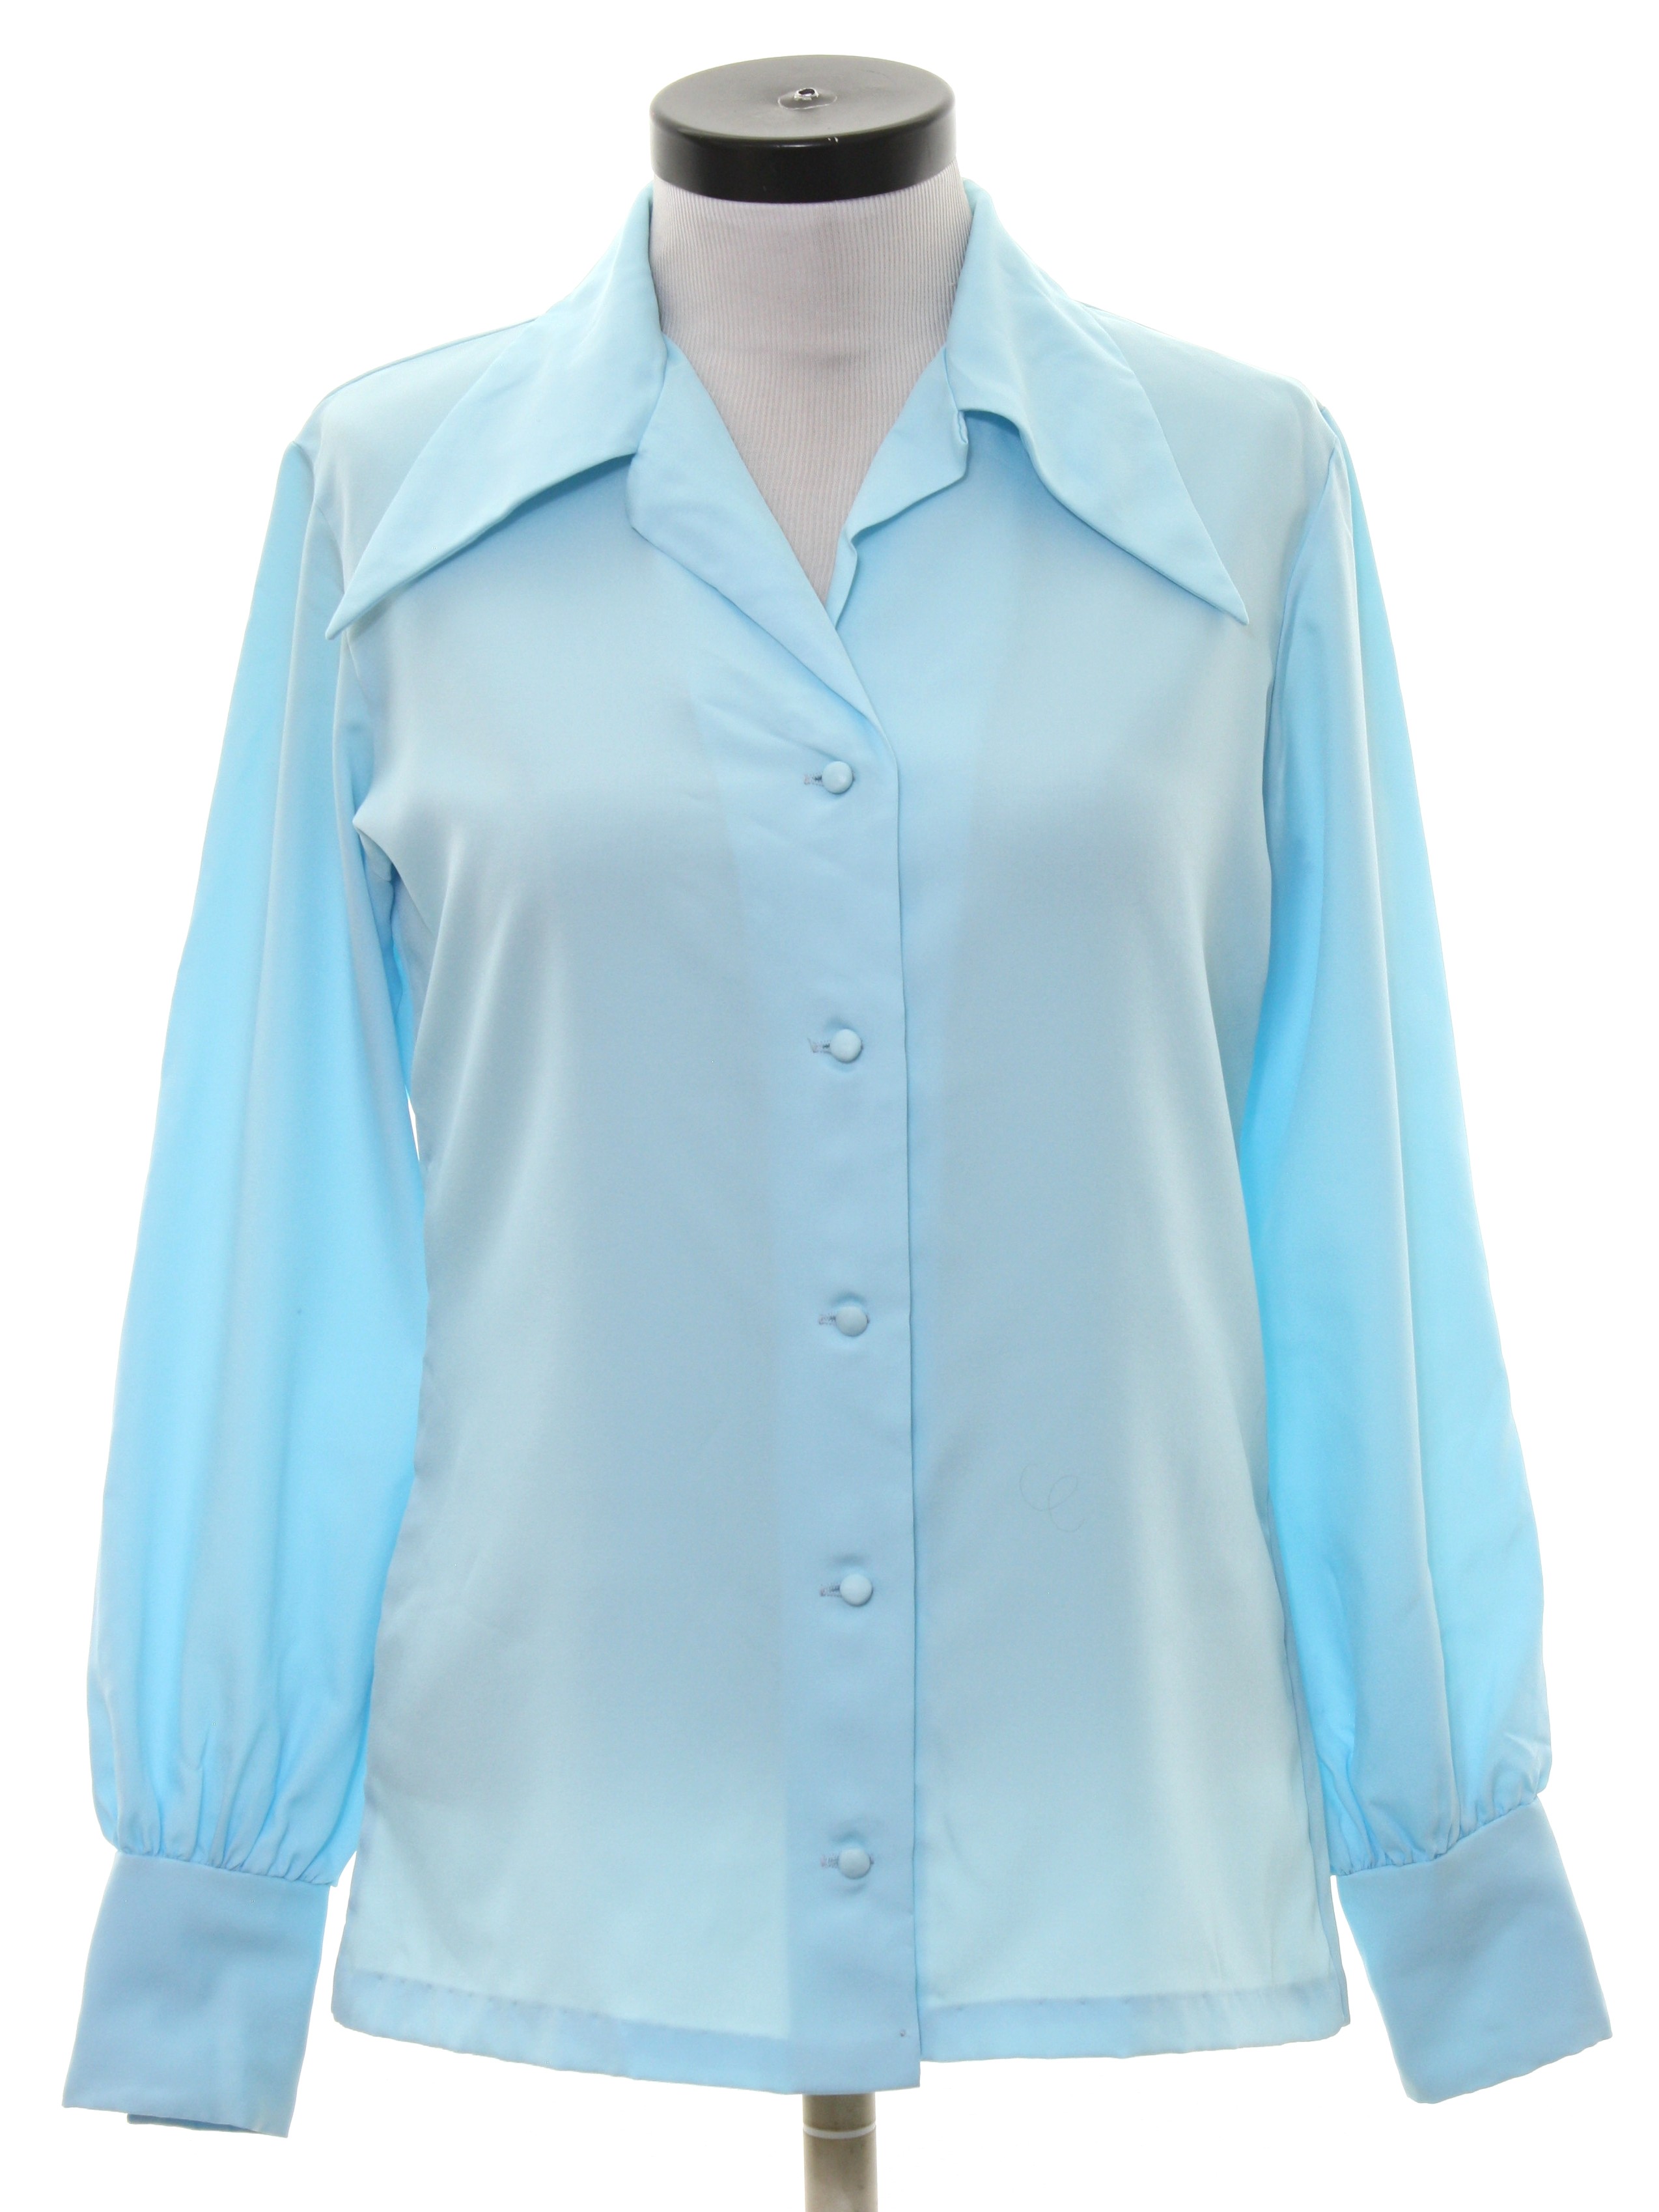 Retro 1970s Shirt: 70s -Le Soft Shirt- Womens aqua silky polyester ...